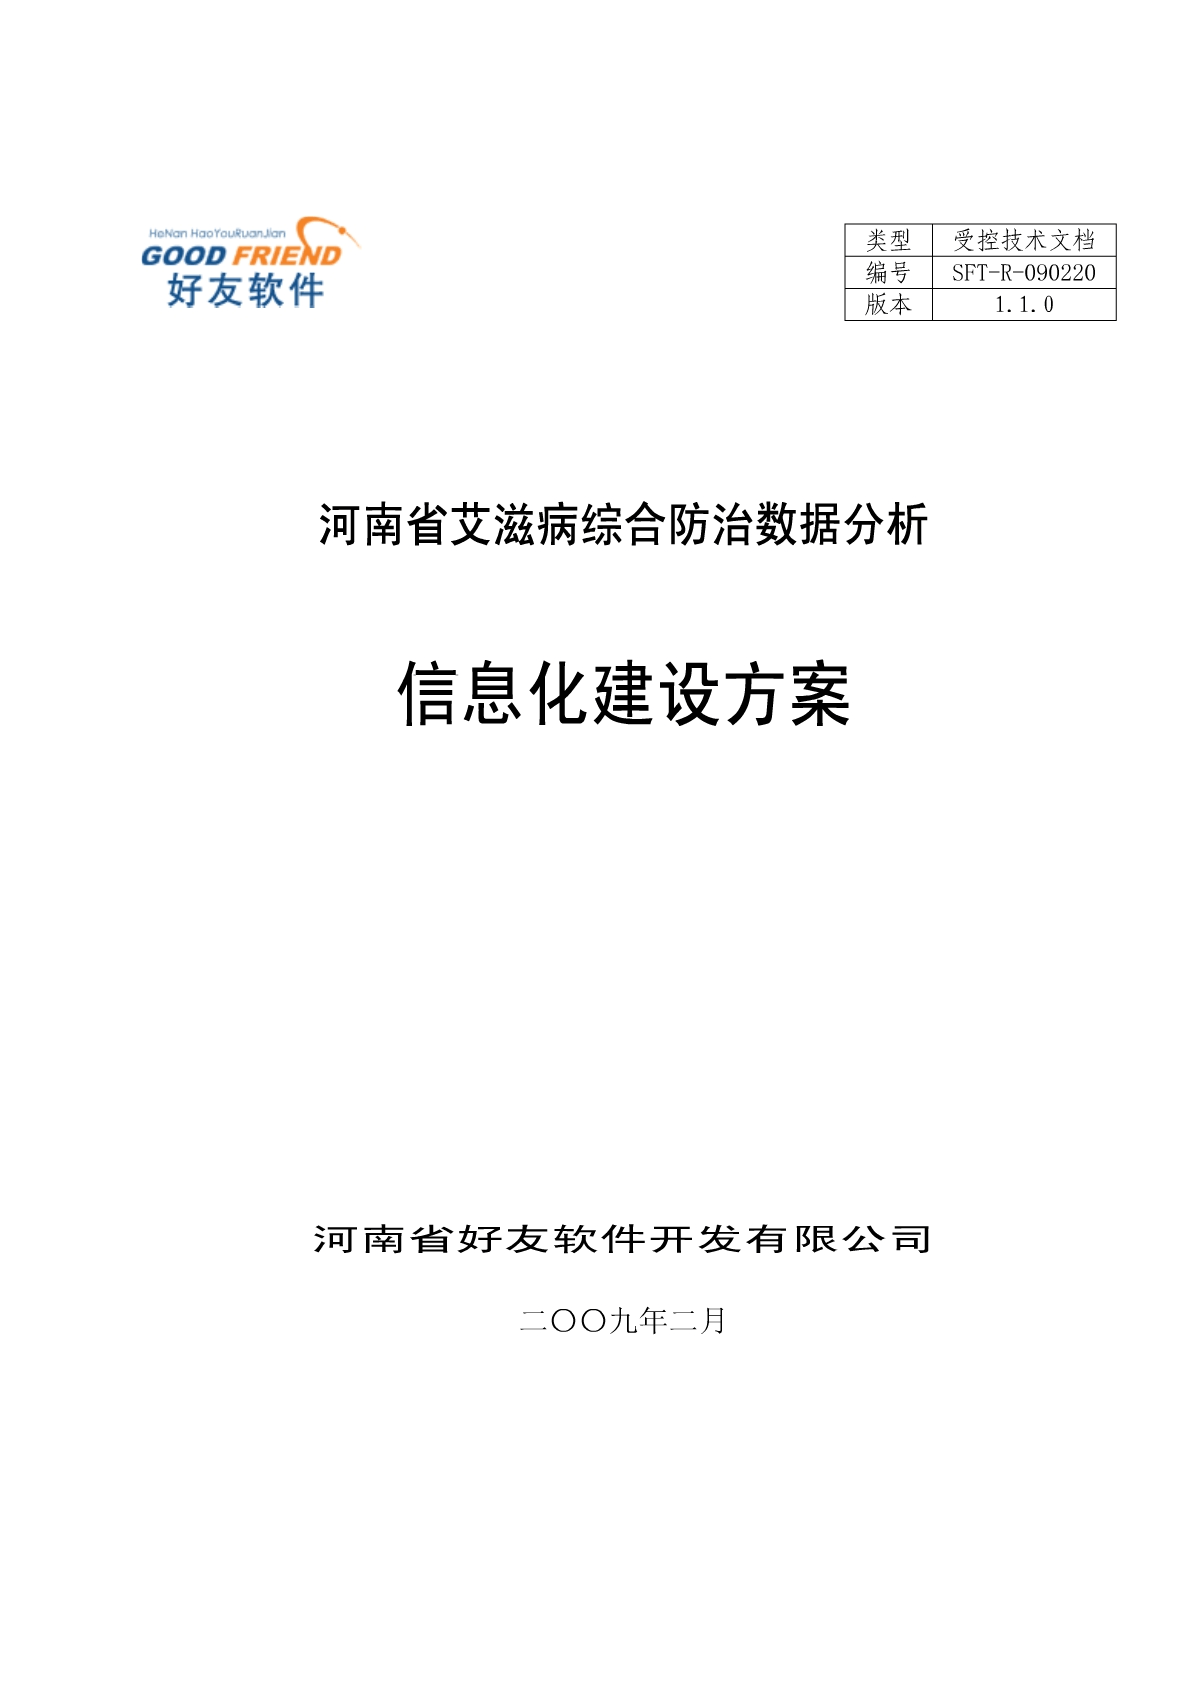 中国疾病预防控制信息系统(中国疾病预防控制信息系统的用户类型包括)